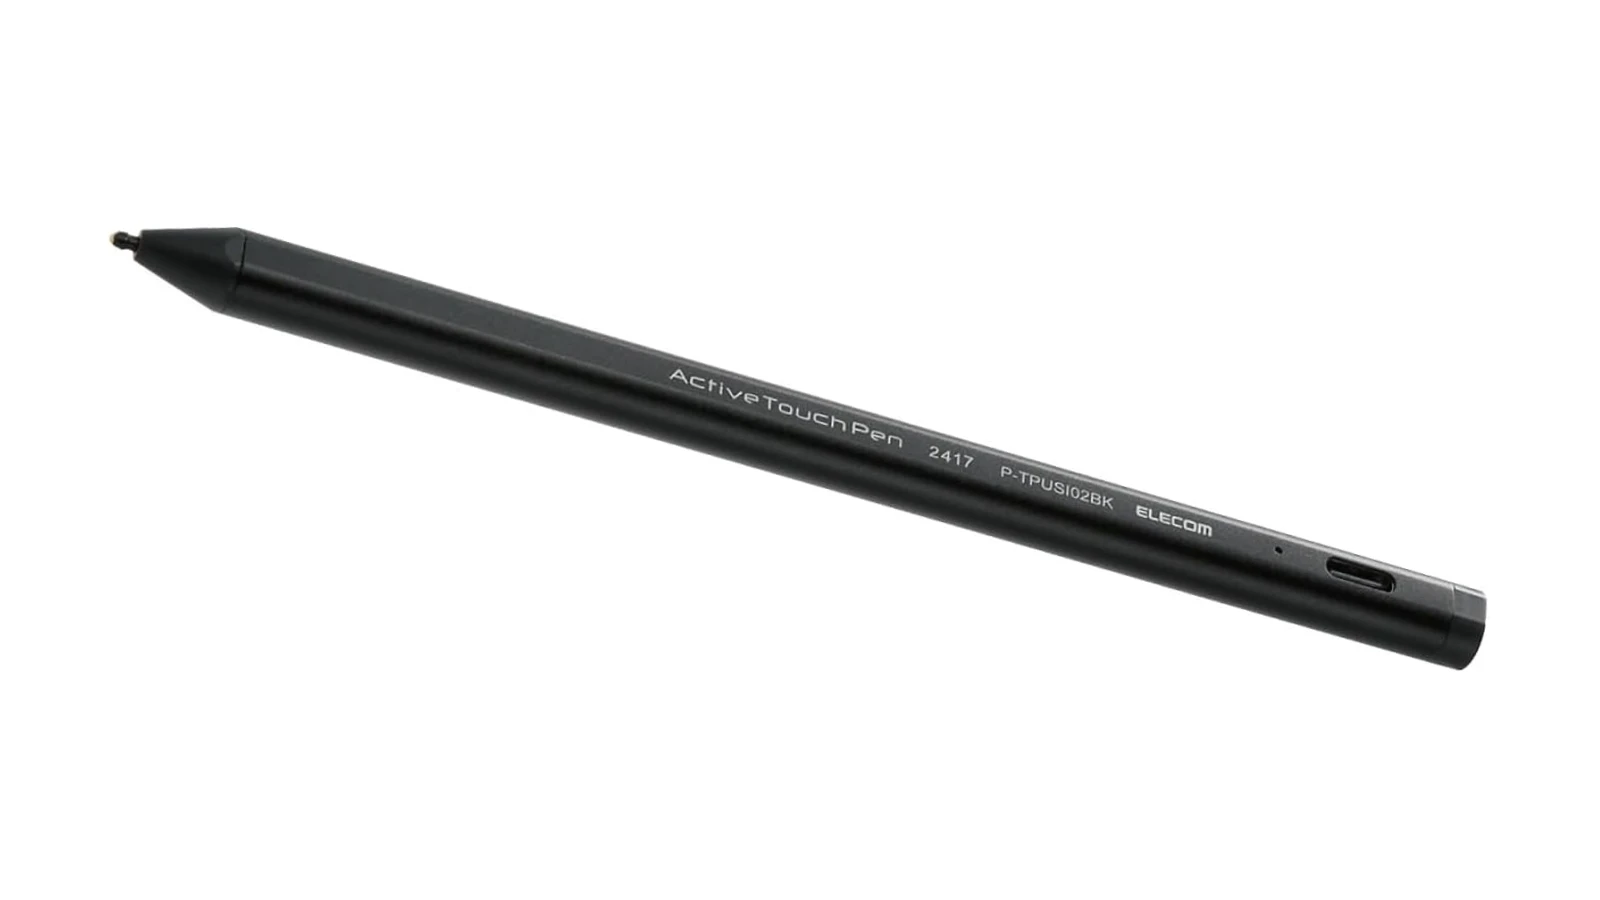 エレコム タッチペン スタイラスペン USI規格対応 極細 タイプc充電 パームリジェクション オートスリープ 45時間連続使用可能 軽量 ペアリング不要 ブラック P-TPUSI02BK